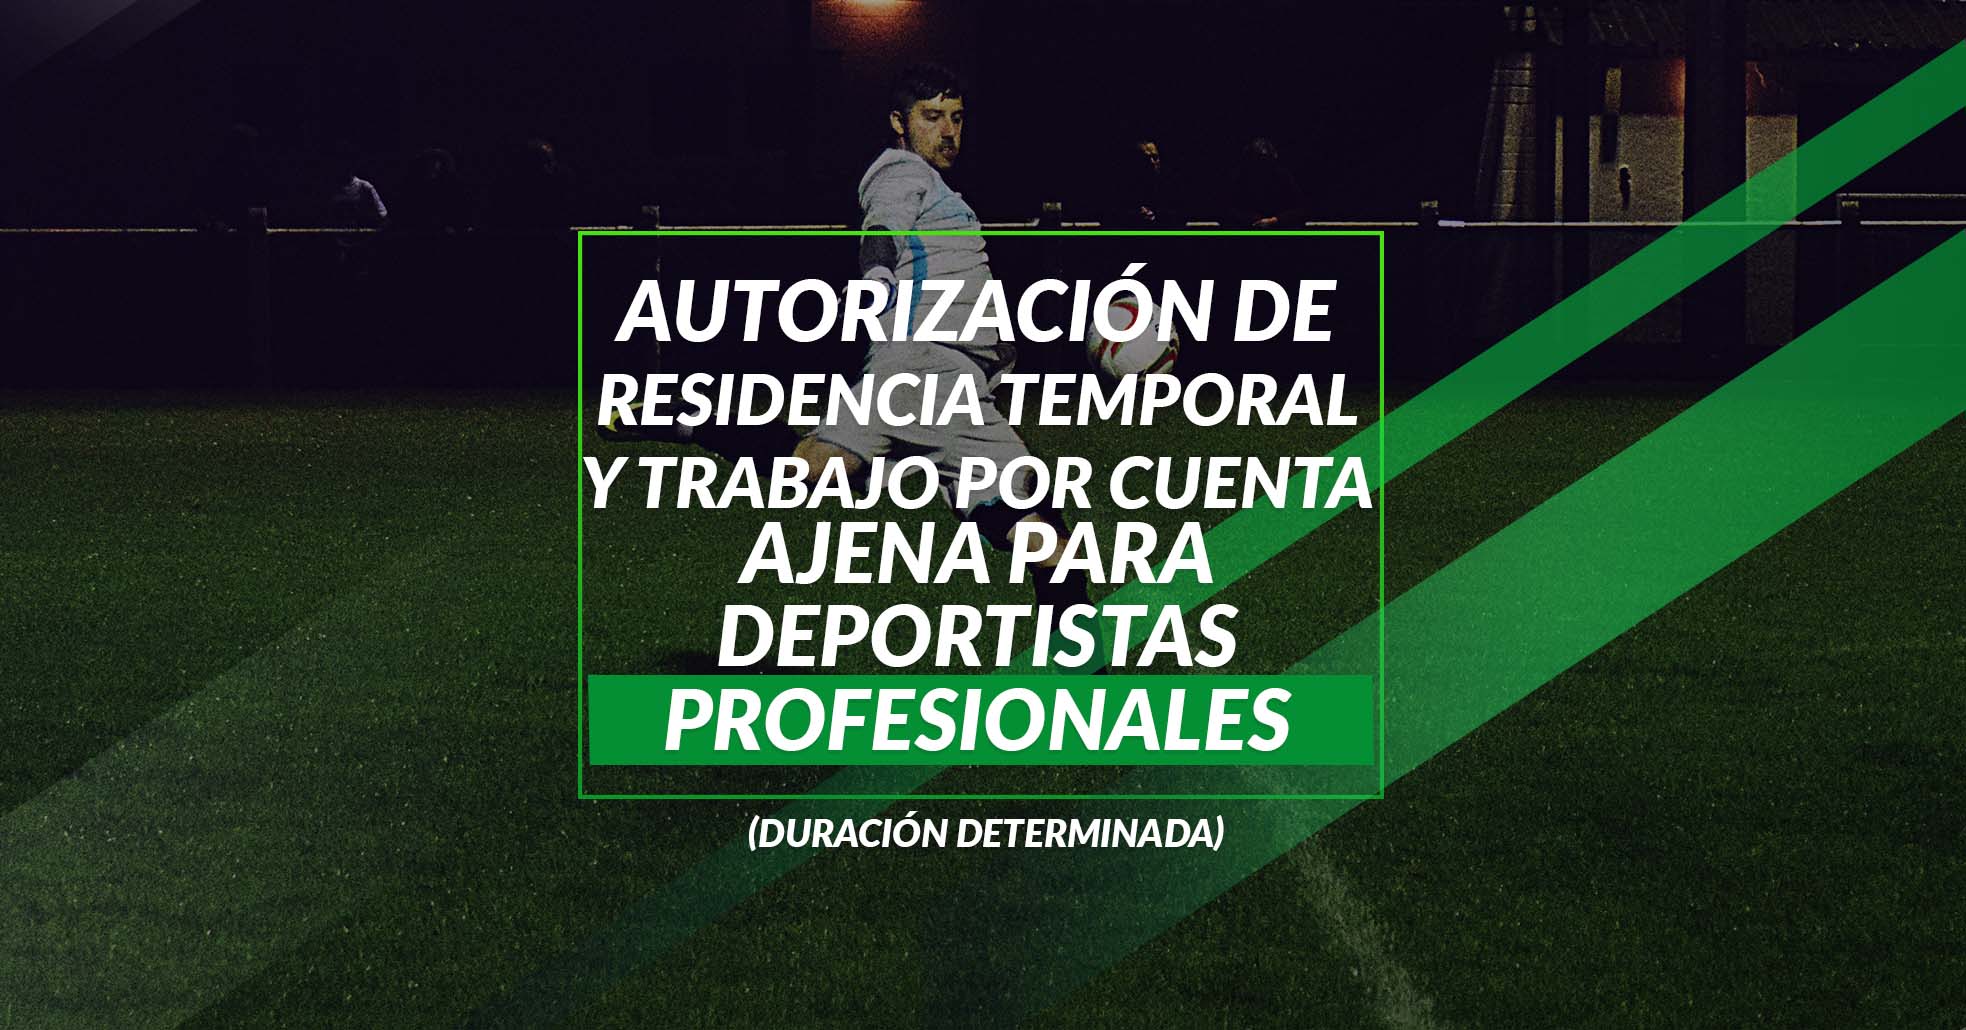 100 Autorización De Residencia Temporal Y Trabajo Por Cuenta Ajena Para Deportistas Profesionales (DURACIÓN DETERMINADA)